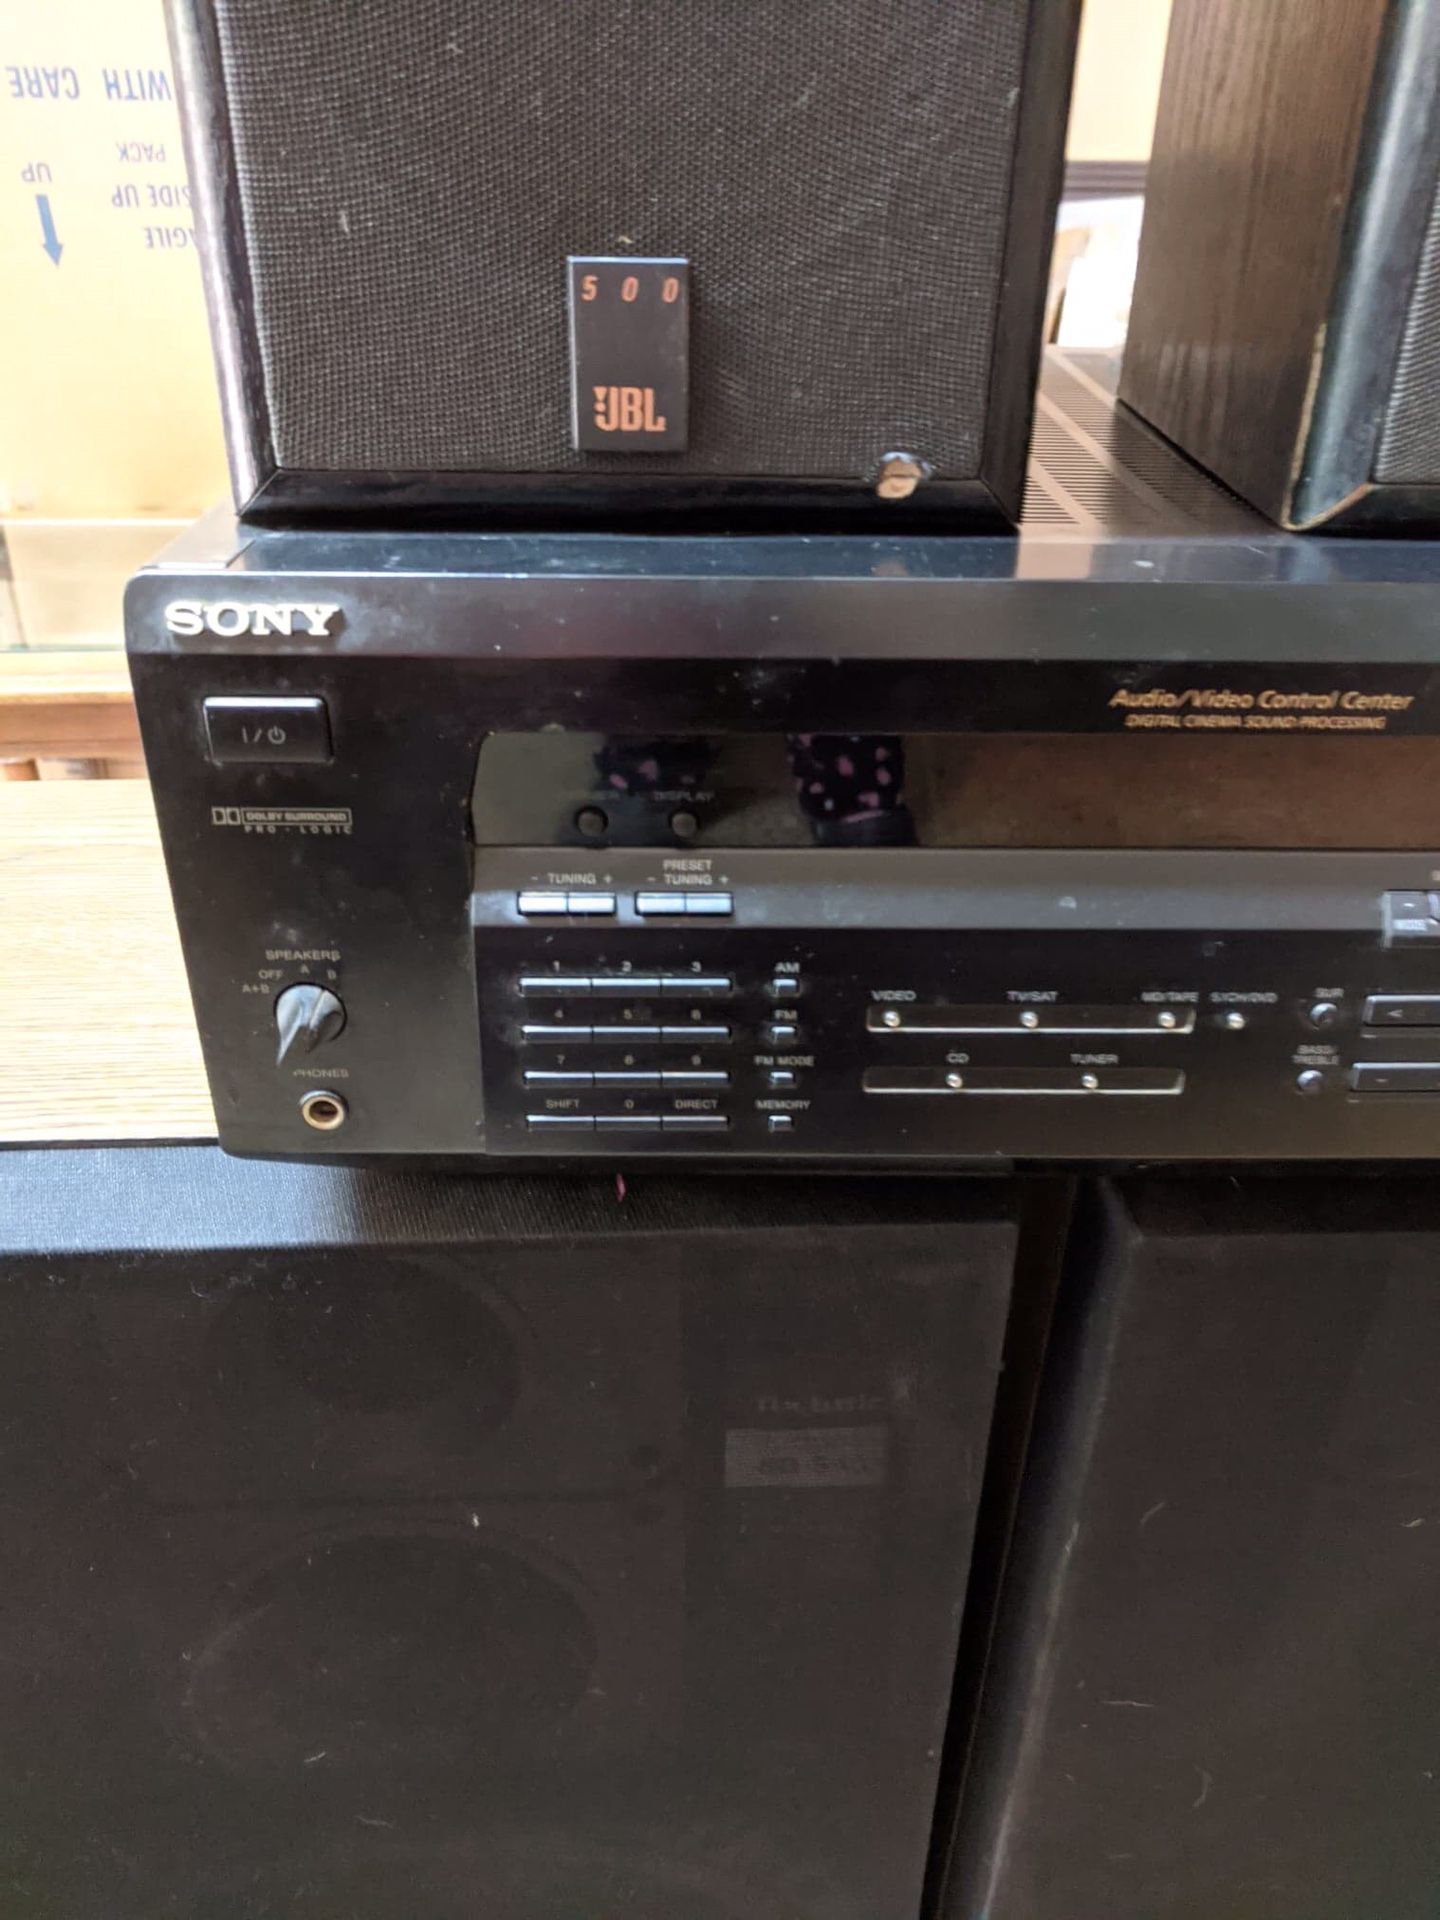 Sony amplifier with speaker